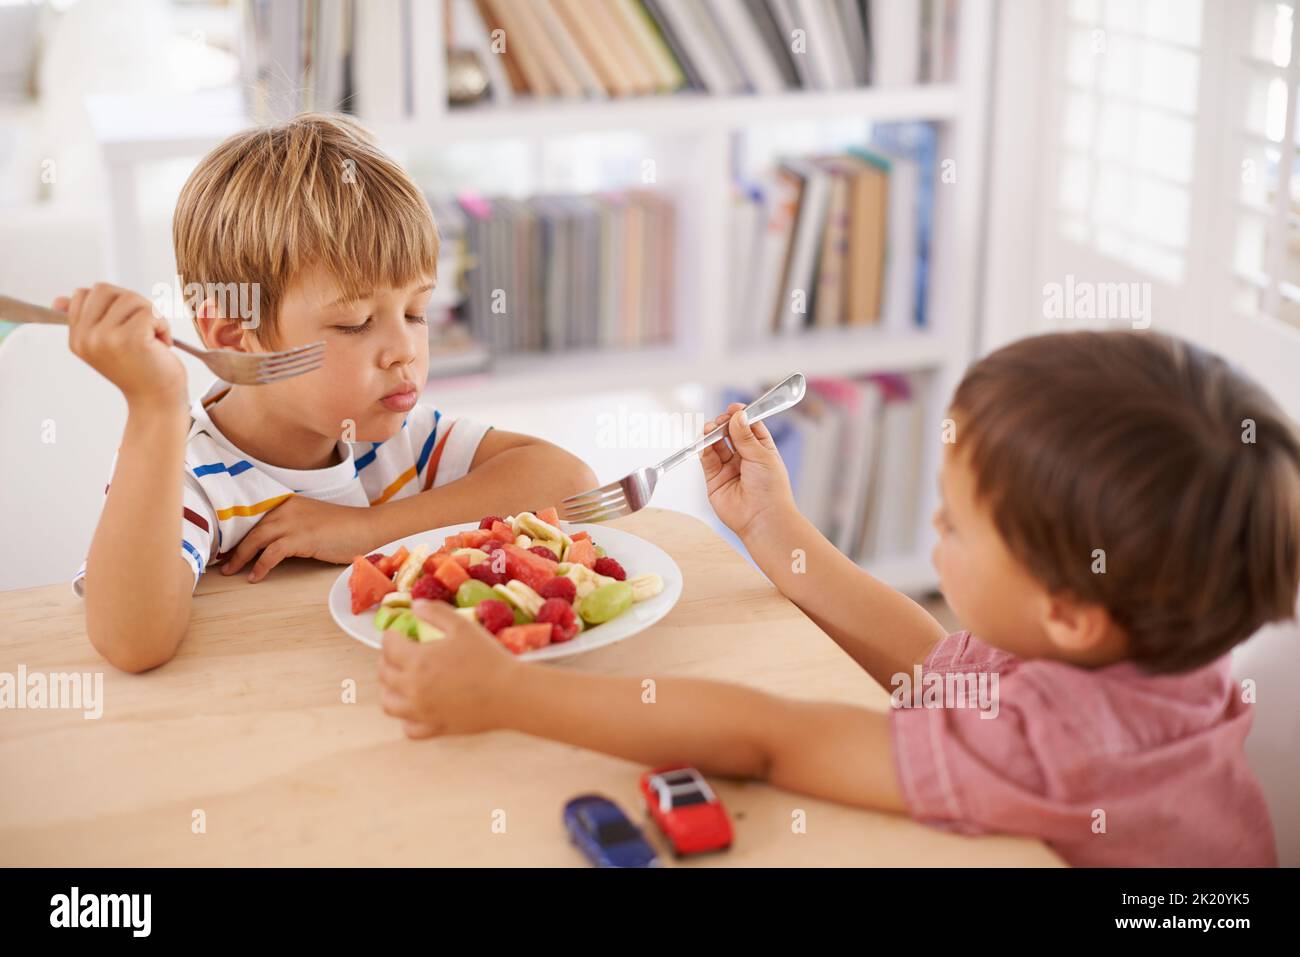 Manger sainement pour que nous puissions grandir forts. Deux adorables petits frères partagent un bol de salade de fruits à la maison Banque D'Images